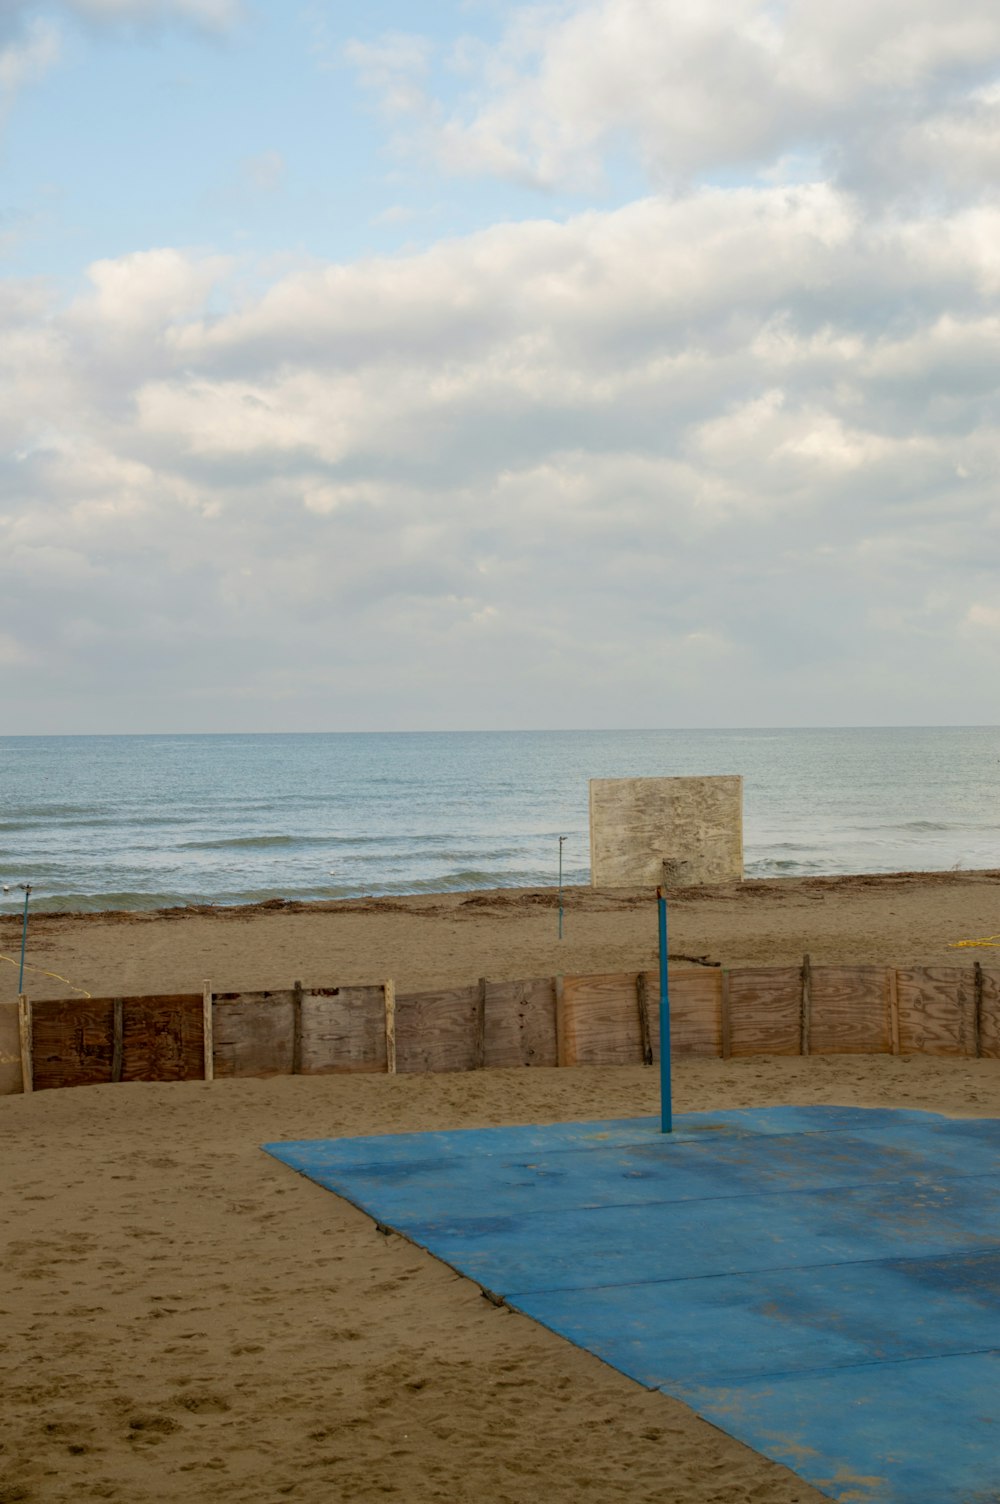 a basketball court on a beach near the ocean